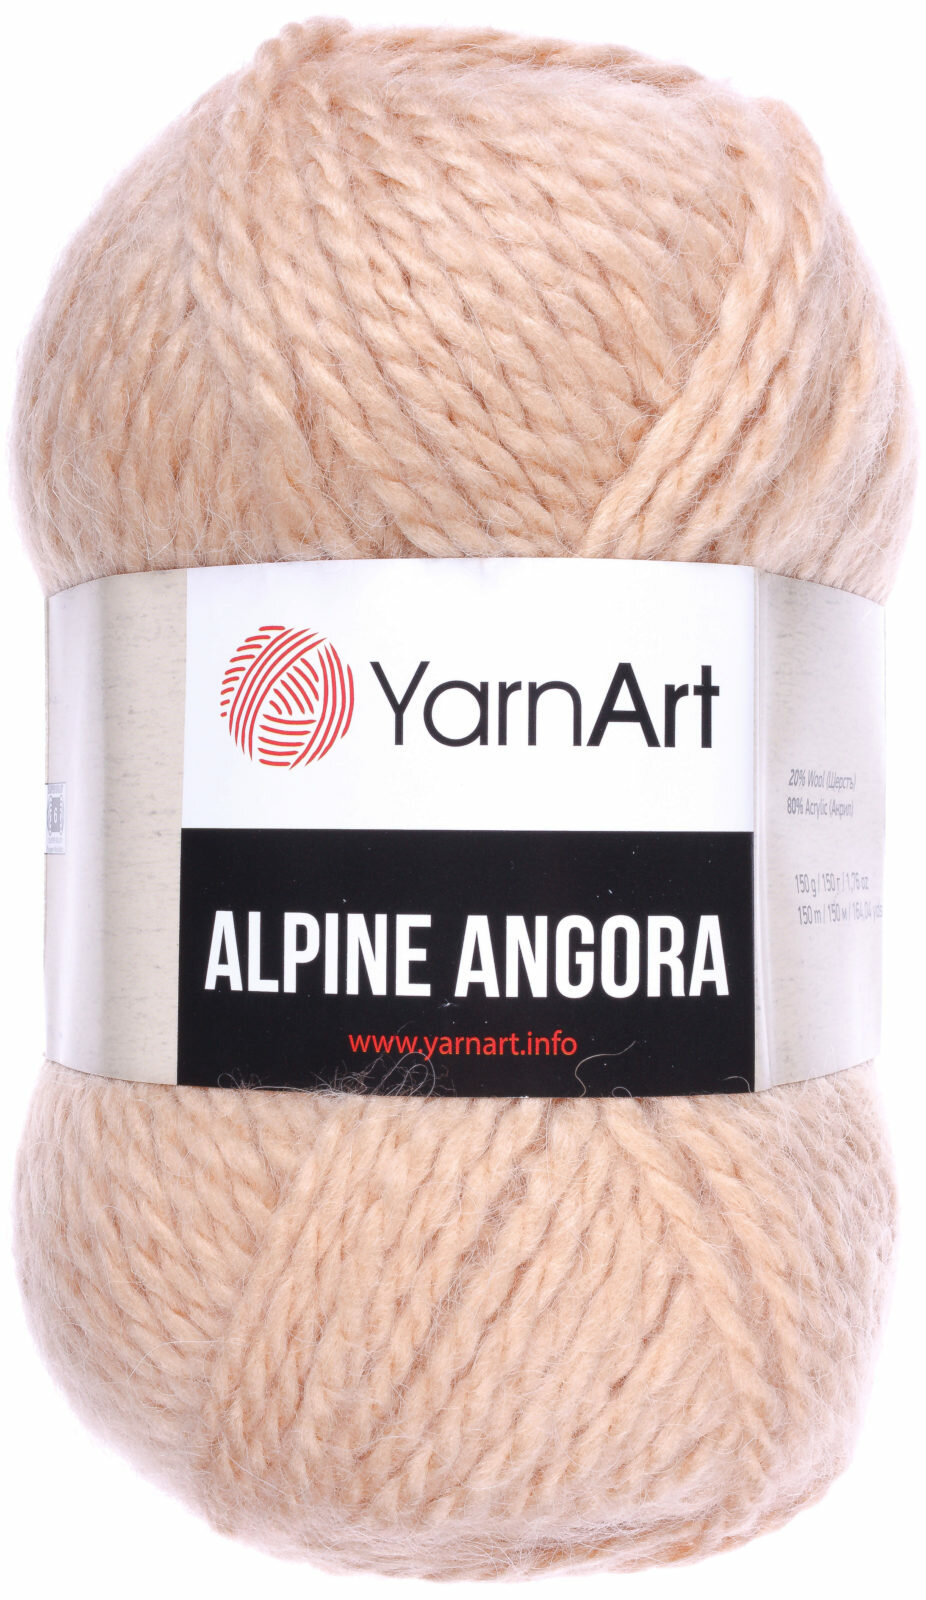 Пряжа Yarnart Alpine angora бежевый (346), 20%шерсть/80% акрил, 150м, 150г, 1шт